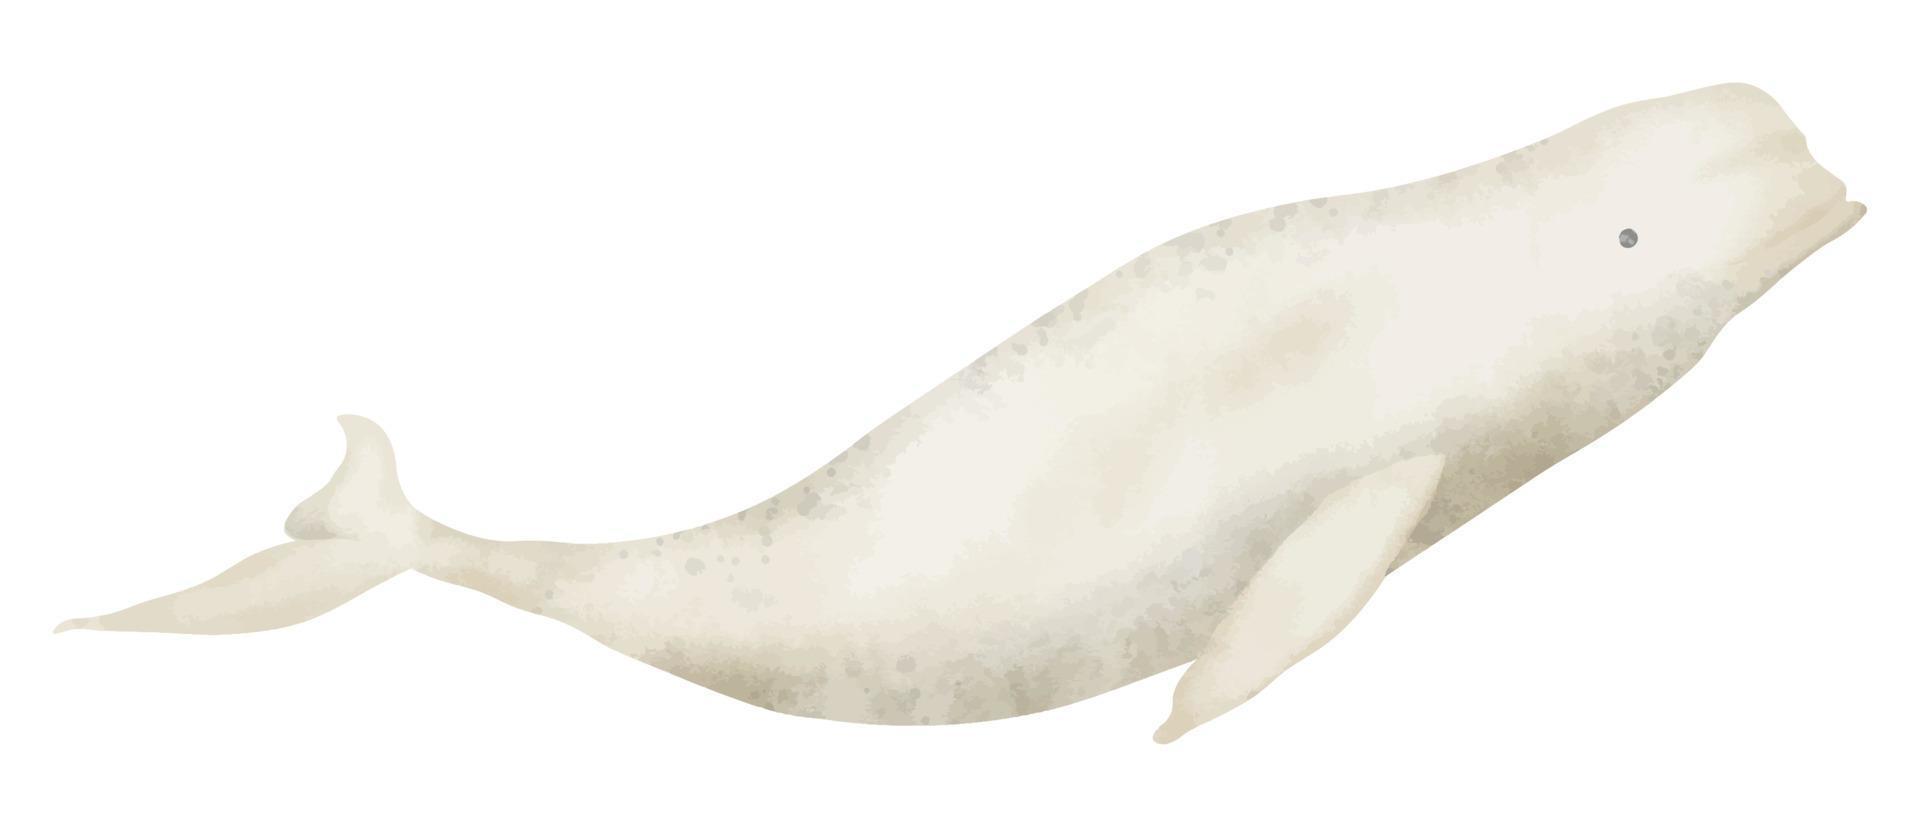 beluga ballena acuarela realista mano dibujado ilustración. norte Oceano animal dibujo en aislado antecedentes. mano dibujado bosquejo de grande mamífero ártico submarino pez. polar delphinapterus leucas vector